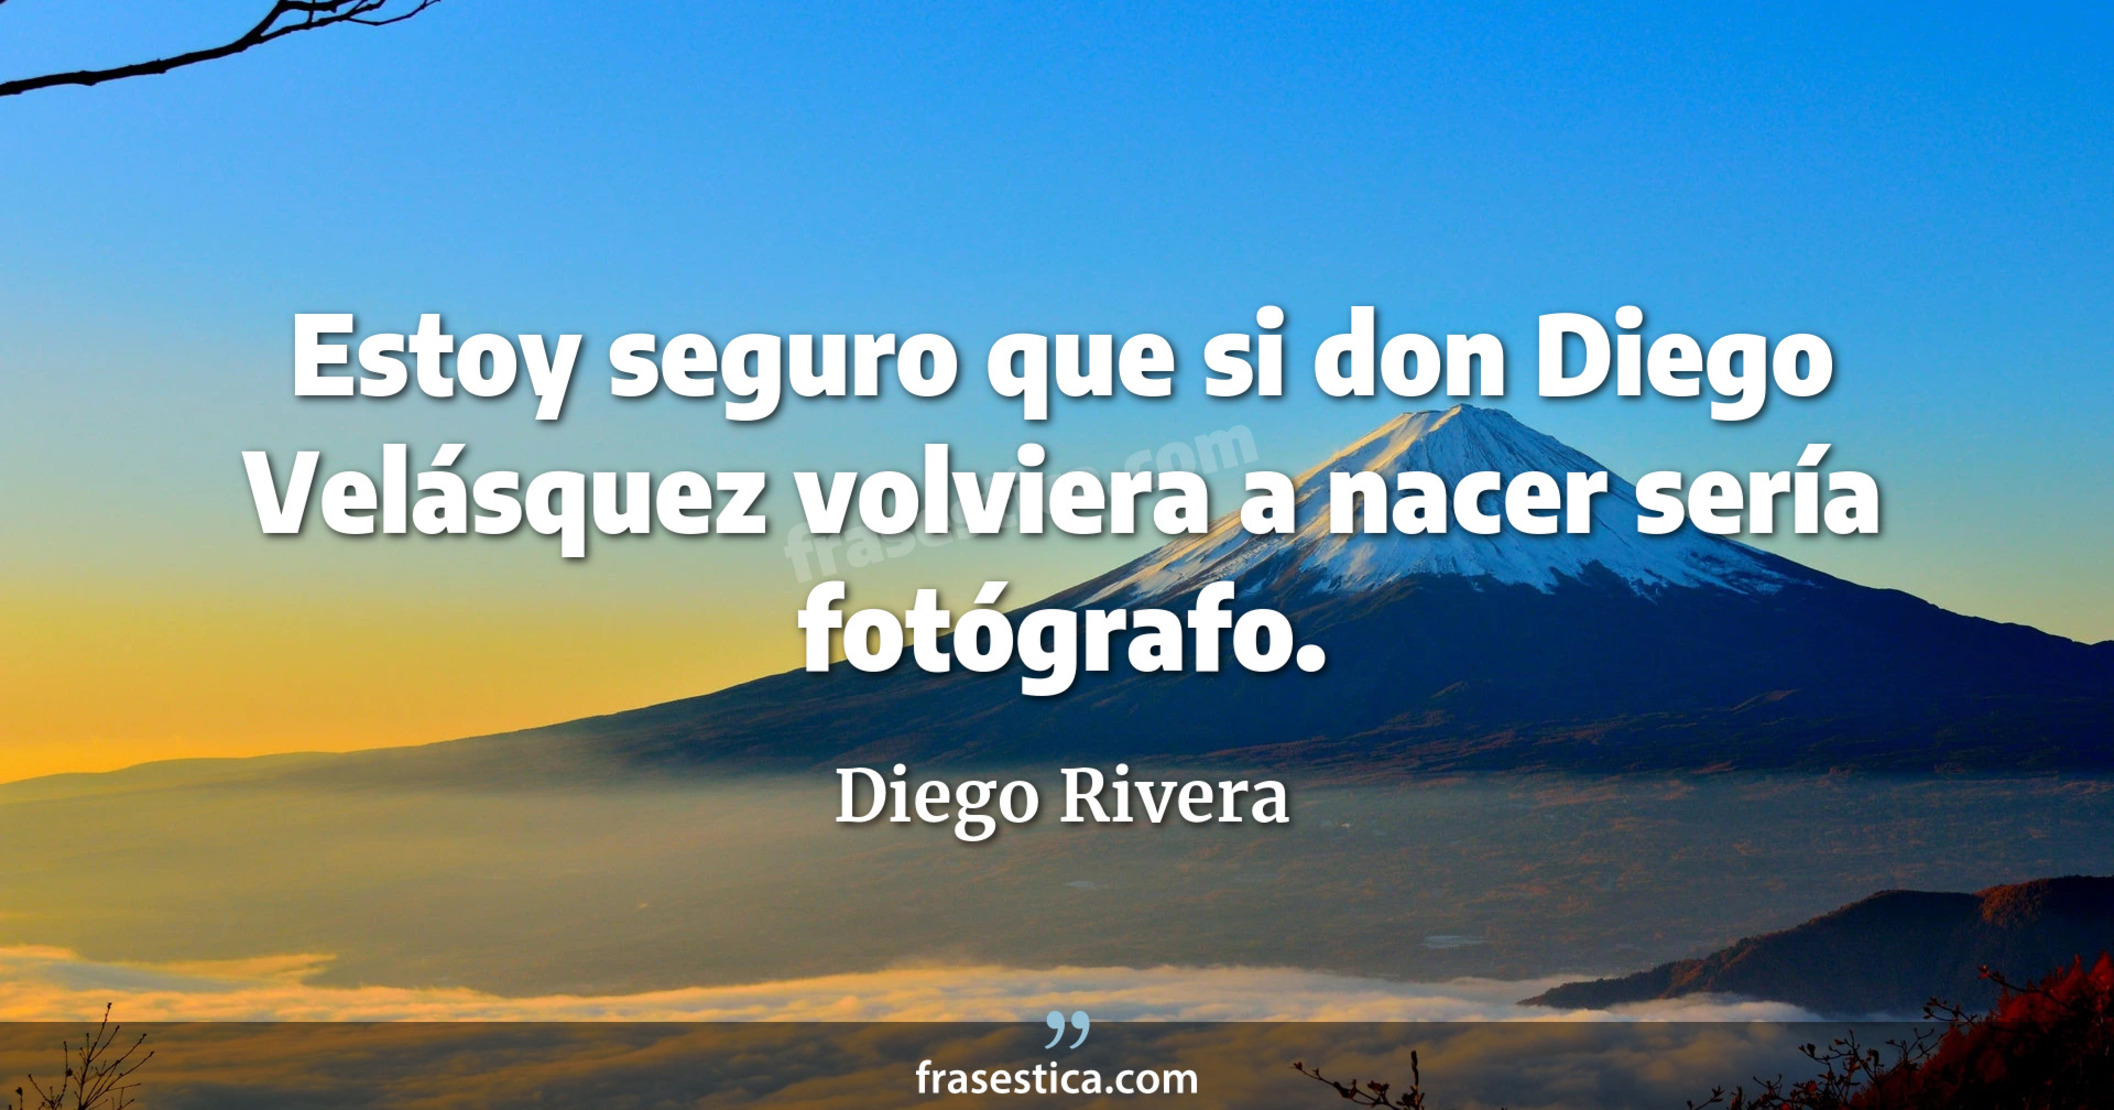 Estoy seguro que si don Diego Velásquez volviera a nacer sería fotógrafo. - Diego Rivera